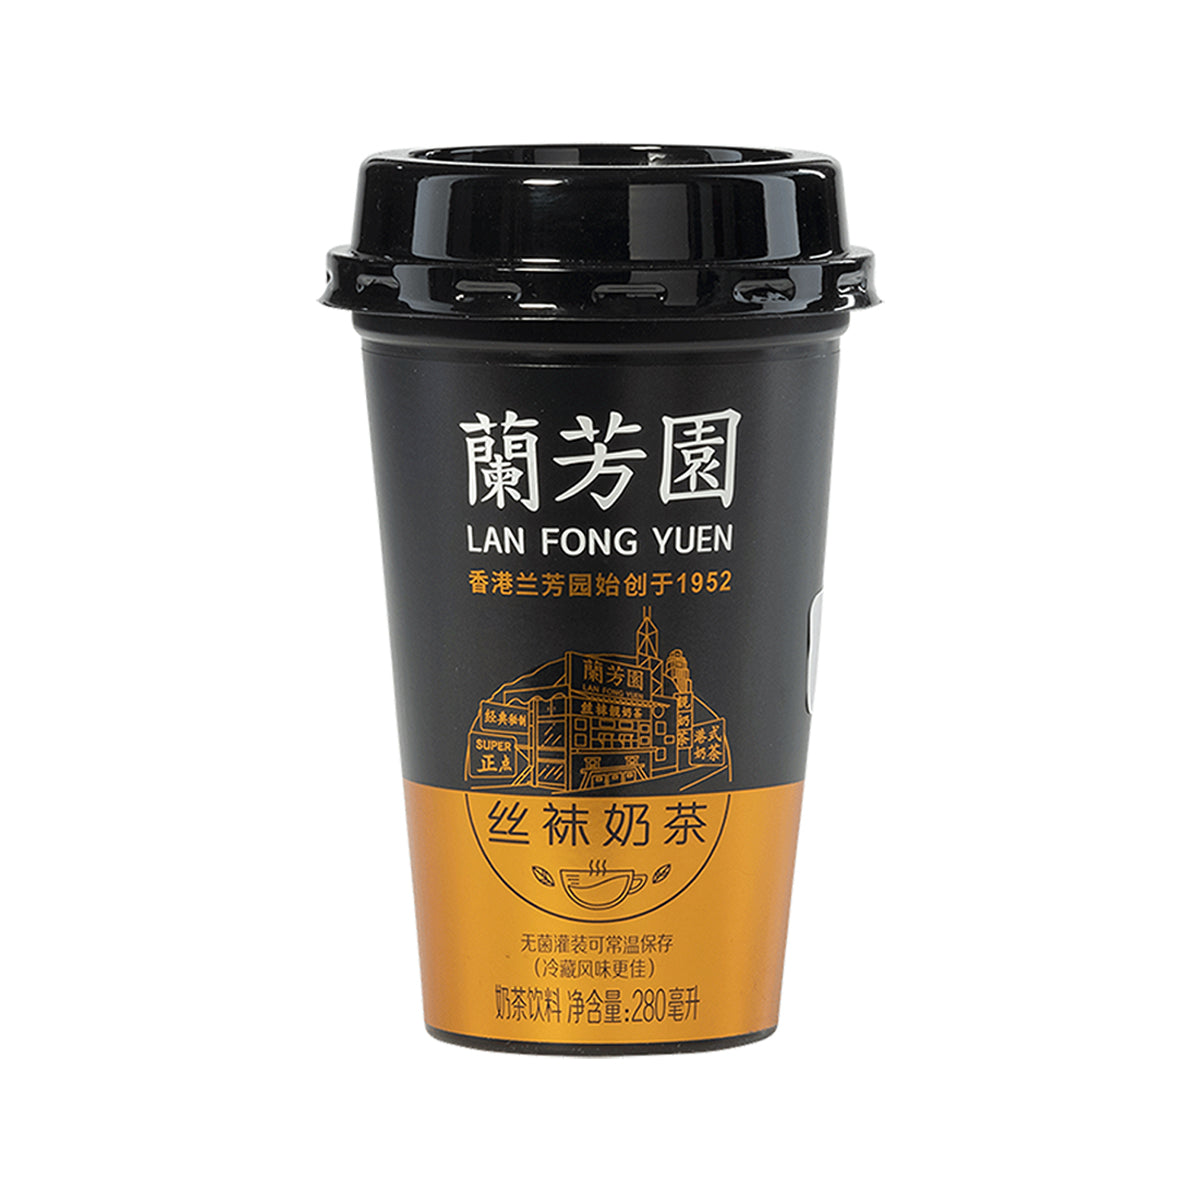 lan fong yuen milk tea - 280ml